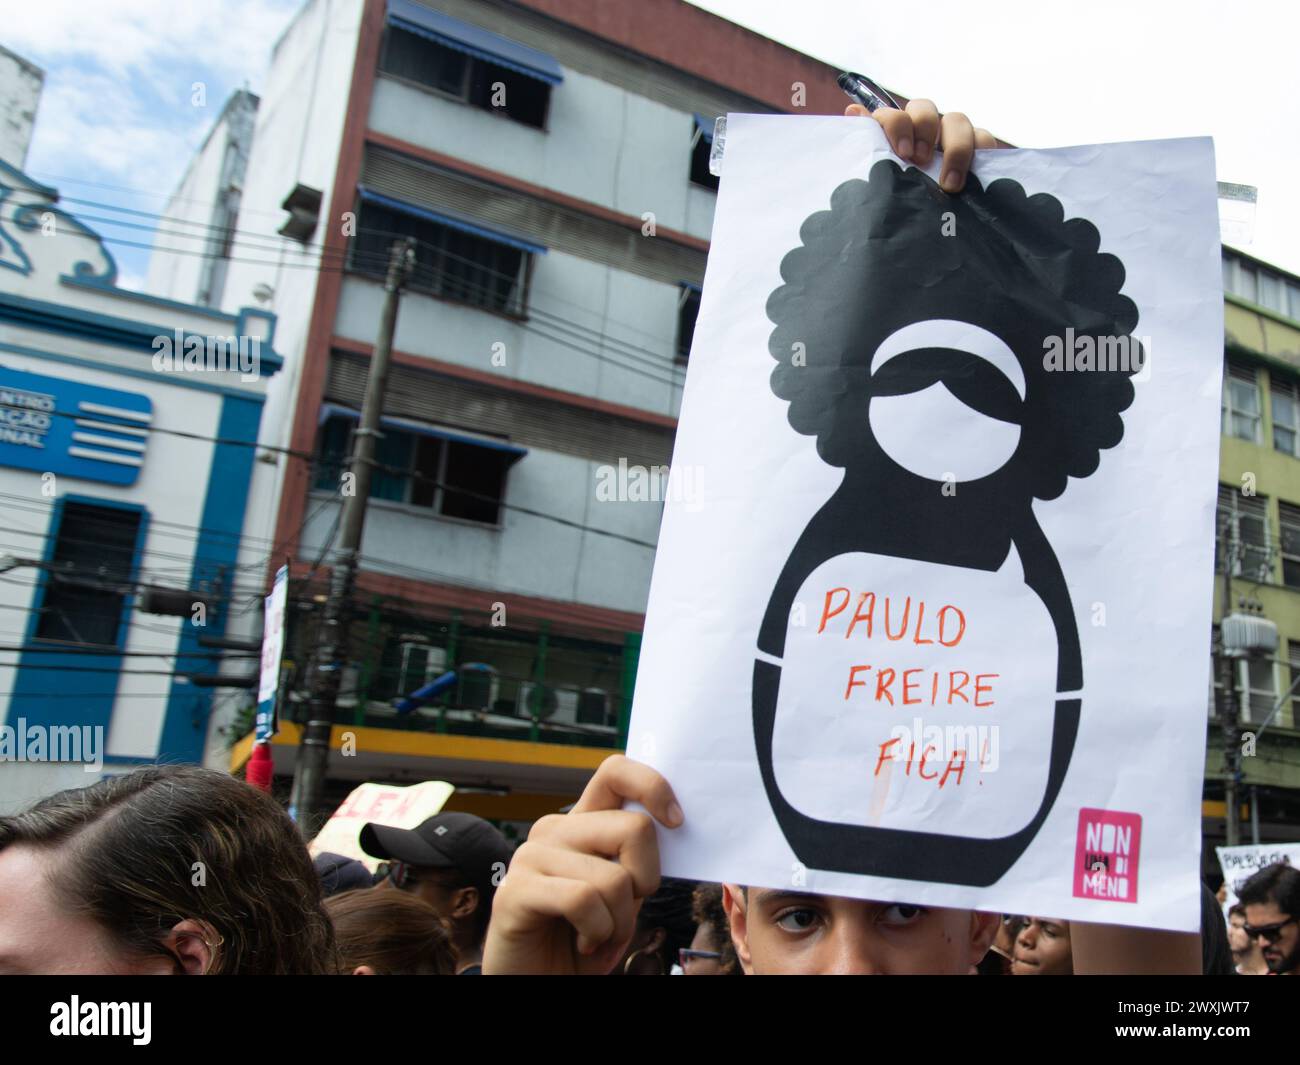 Salvador, Bahia, Brésil - 15 mai 2019 : des étudiants sont vus brandissant des pancartes lors d'une manifestation en faveur de l'éducation brésilienne dans la ville de Salvador Banque D'Images